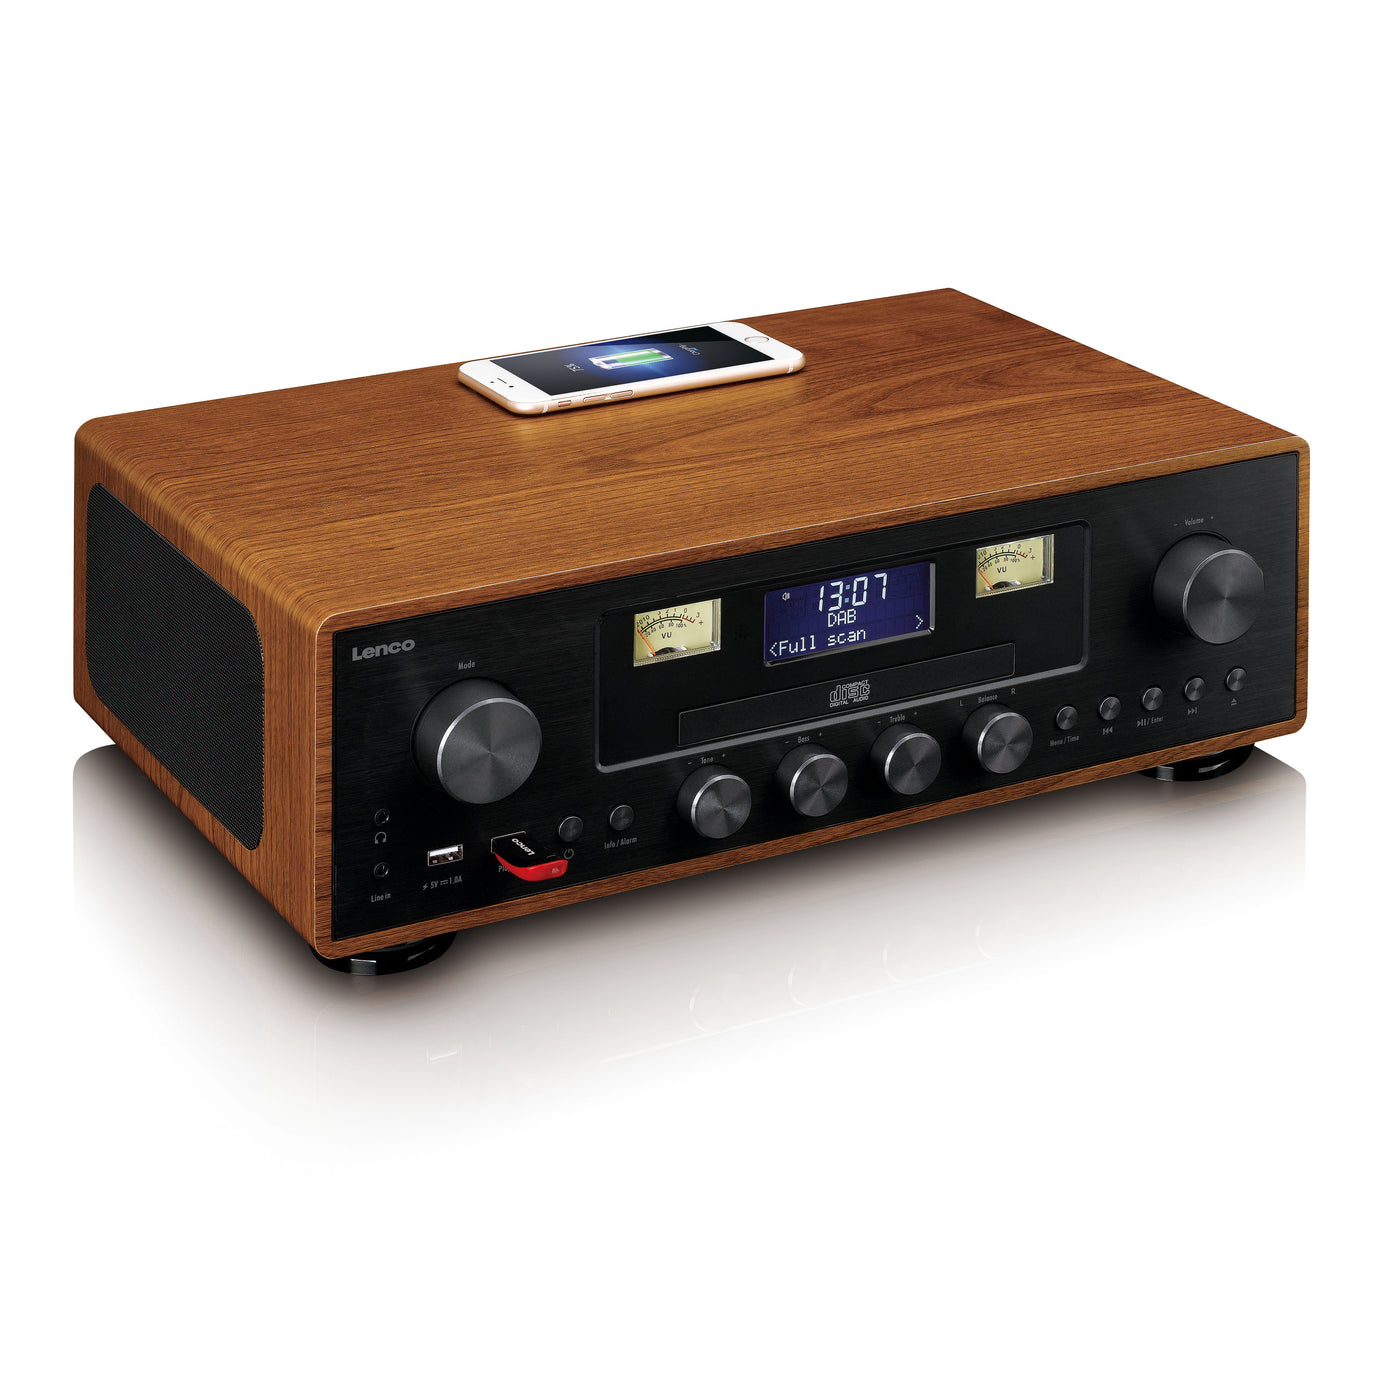 LENCO DAR-081WD - DAB+/FM radio with CD player, USB, Bluetooth and wir –  Lenco-Catalog